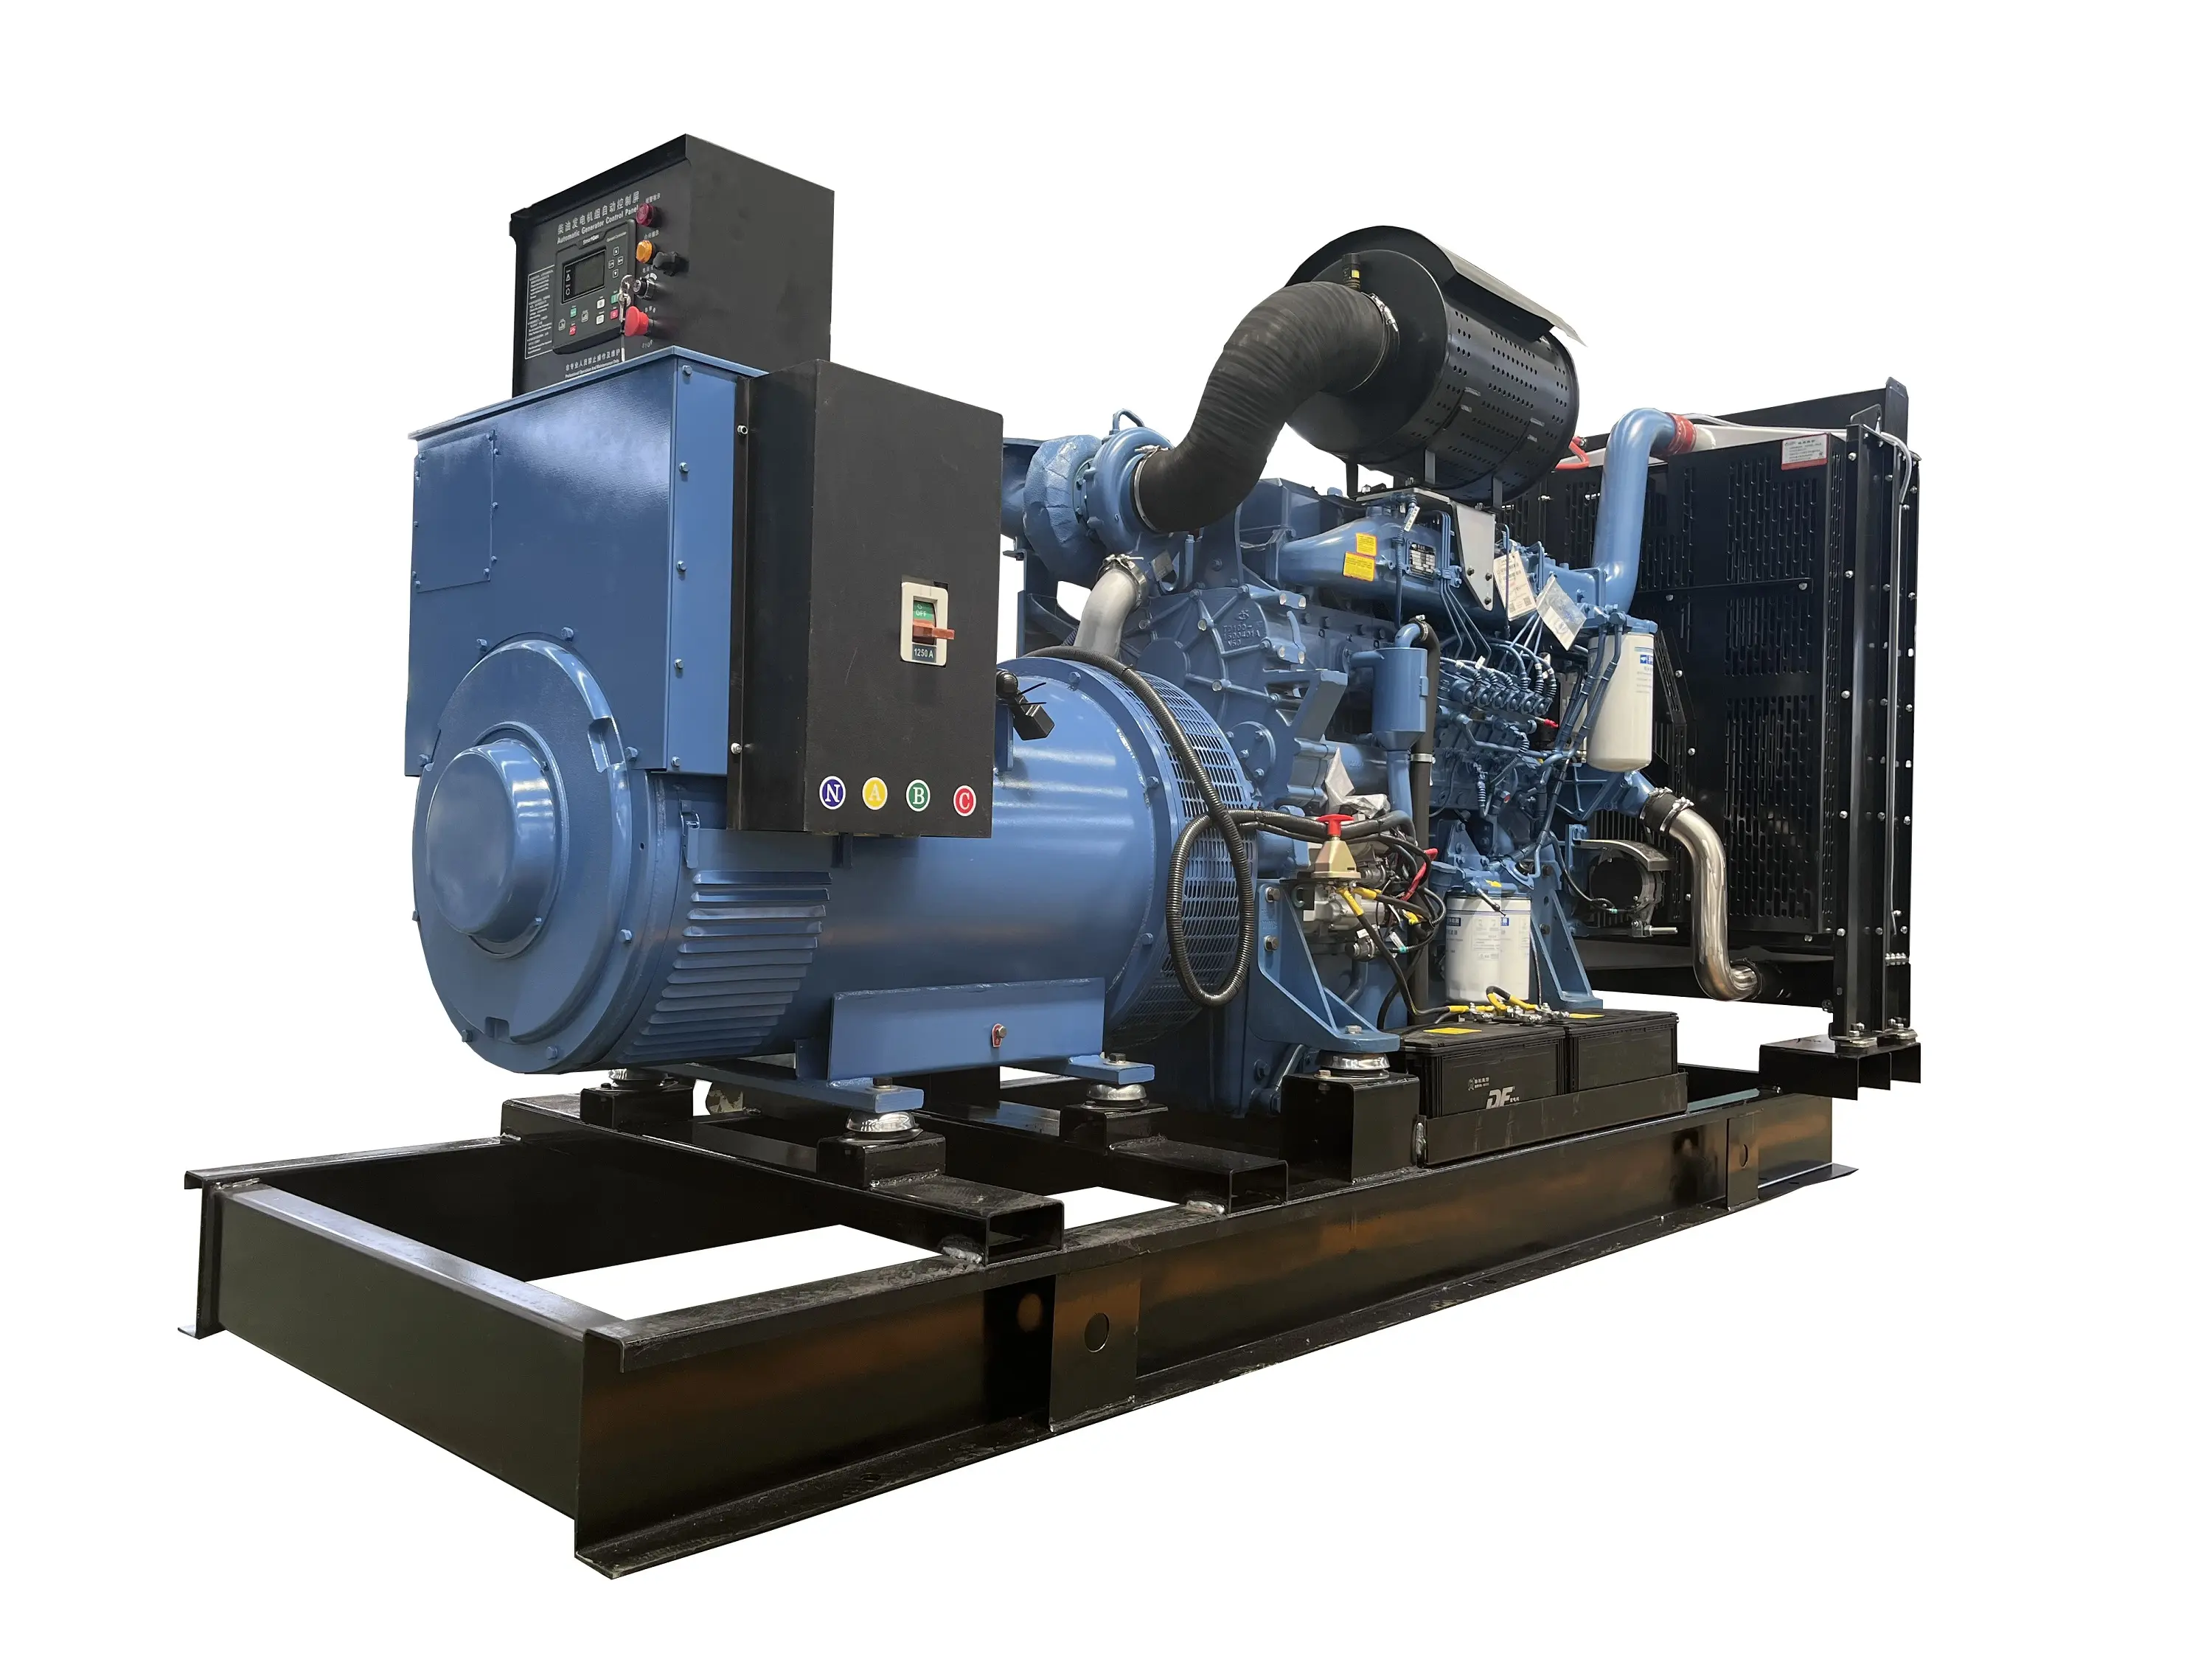 Sıcak satış düşük fiyat Yuchai jeneratör satılık ucuz motor ile 500 kw 500kw süper sessiz dizel jeneratör